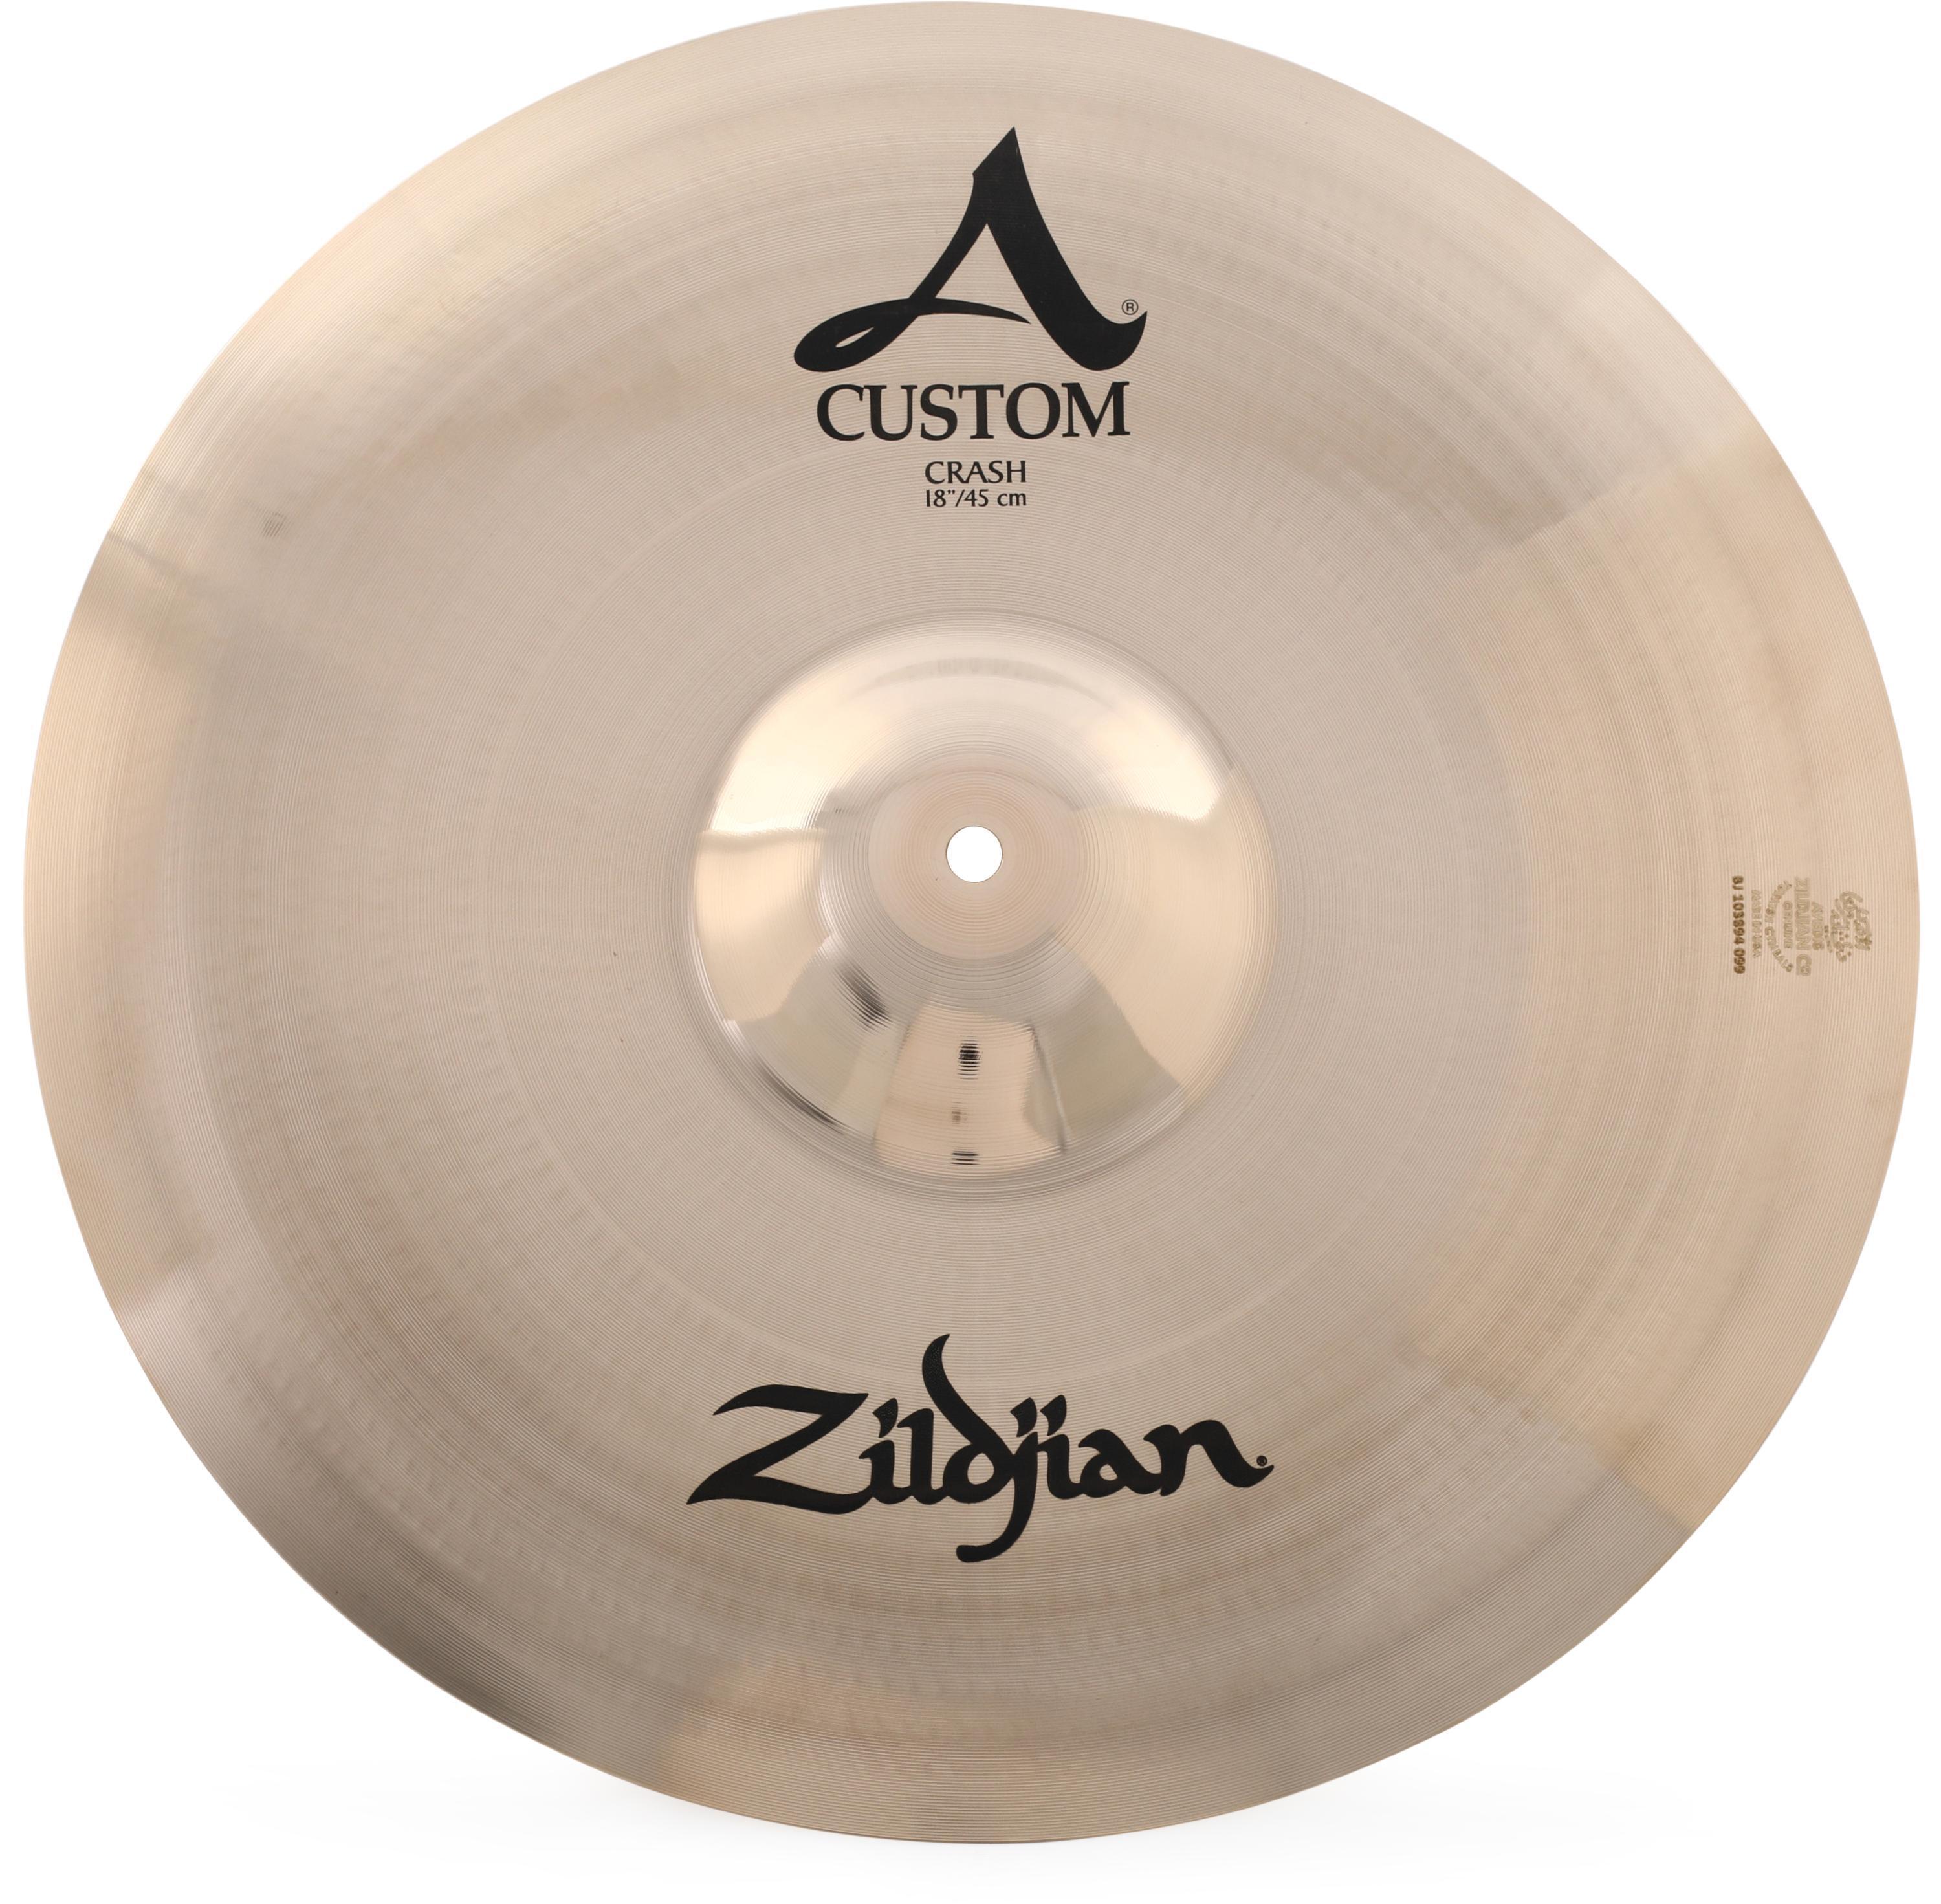 Zildjian  inch A Custom Crash Cymbal   Sweetwater